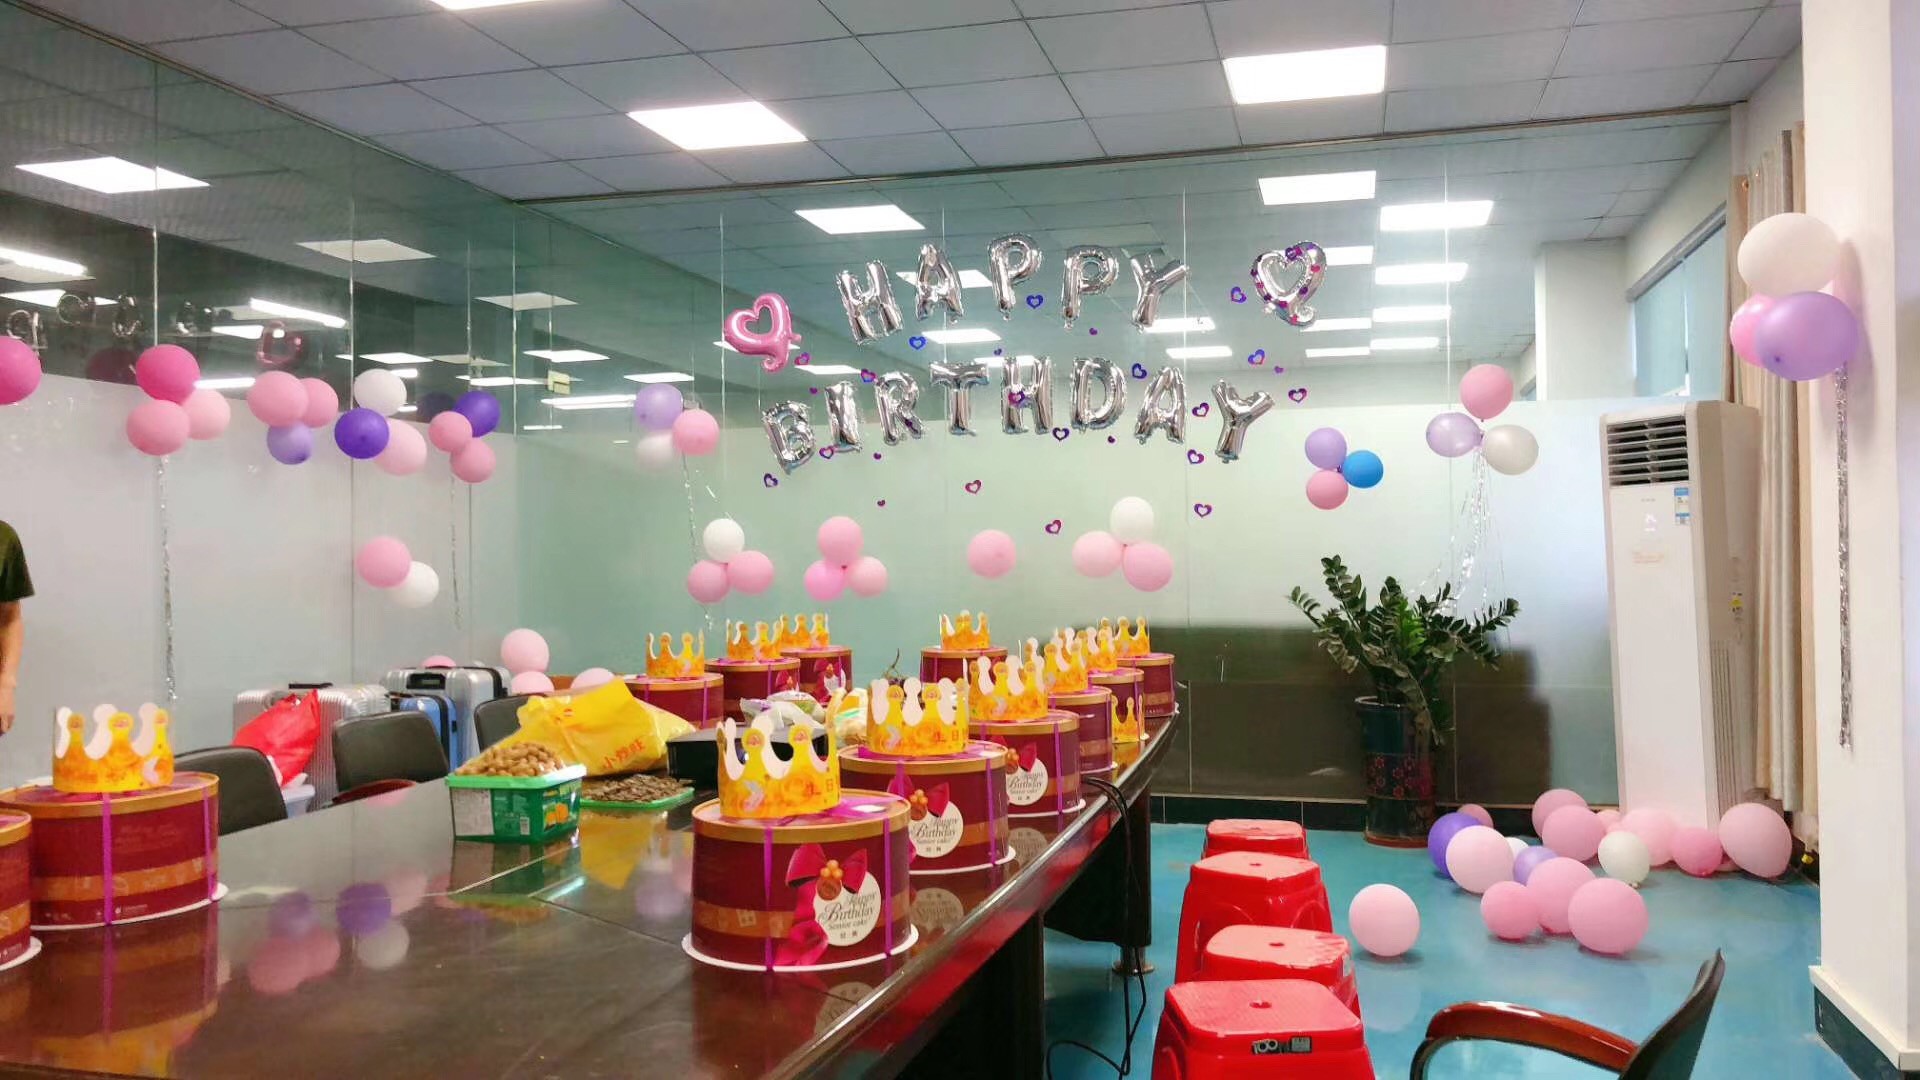 Hucai Sportswear Company Staff Birthday Party